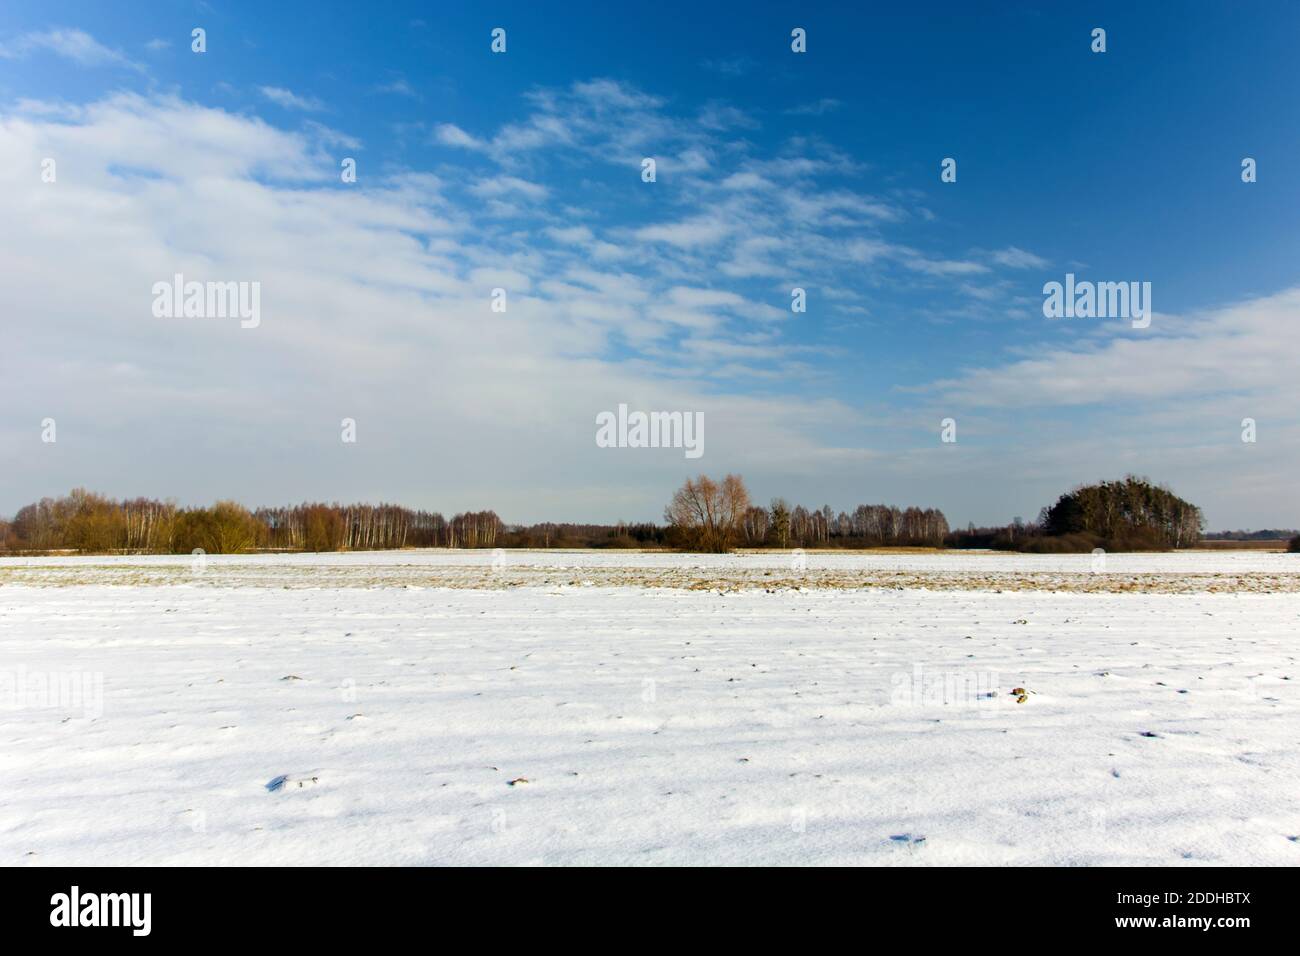 Campo cubierto de nieve, bosque en el horizonte y nubes blancas en el cielo, vista de invierno Foto de stock